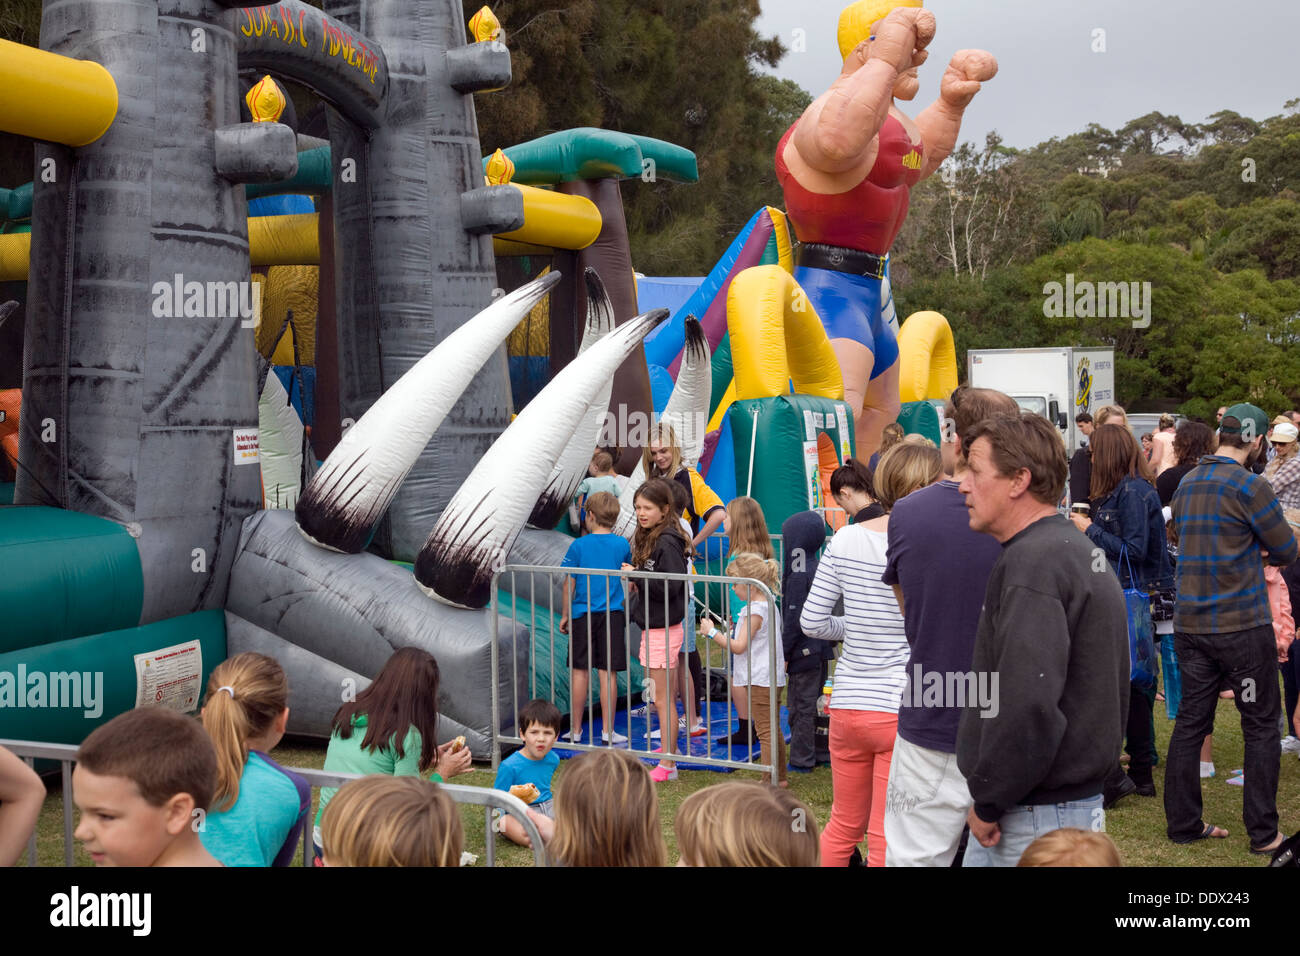 Fête annuelle de l'école primaire de l'Australie et de carnaval,Sydney Australie Avalon Banque D'Images